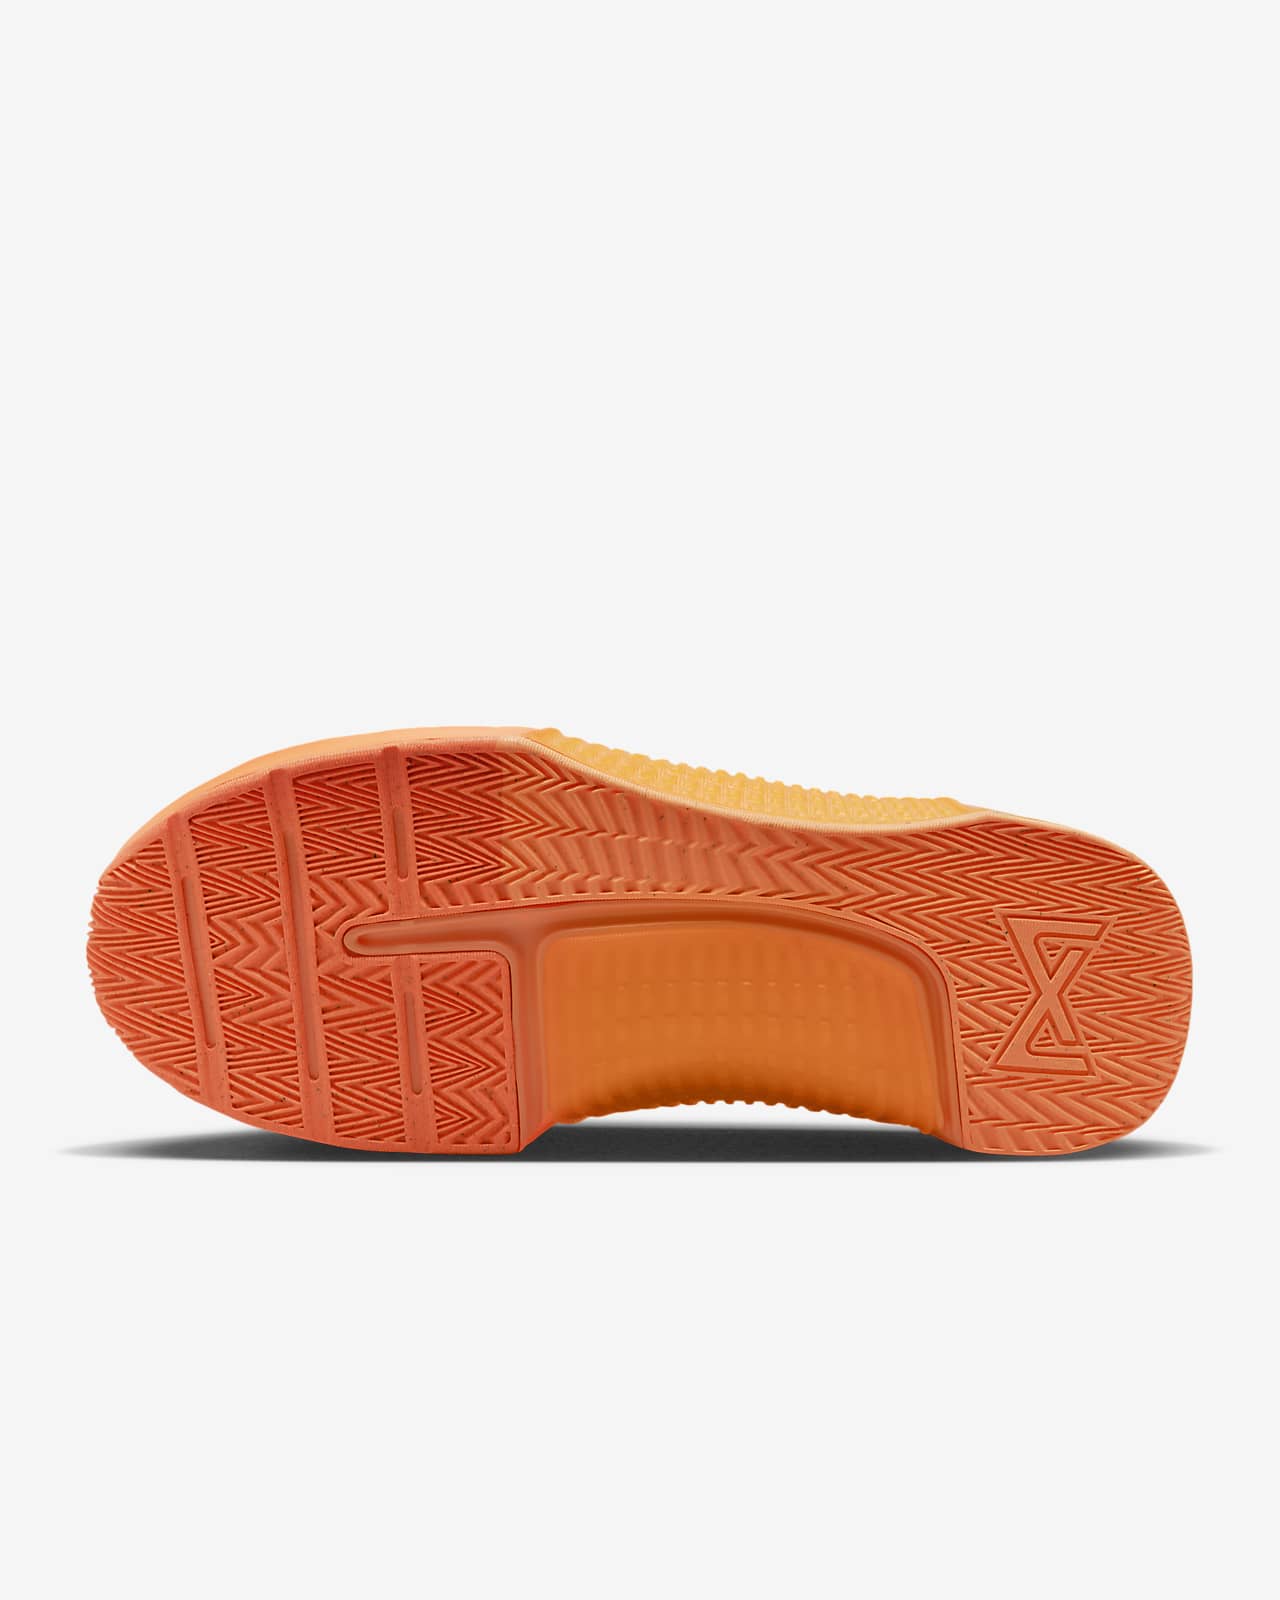 Nike Metcon 9 AMP Atomic Orange White Men Cross Training Shoes DZ2616-800